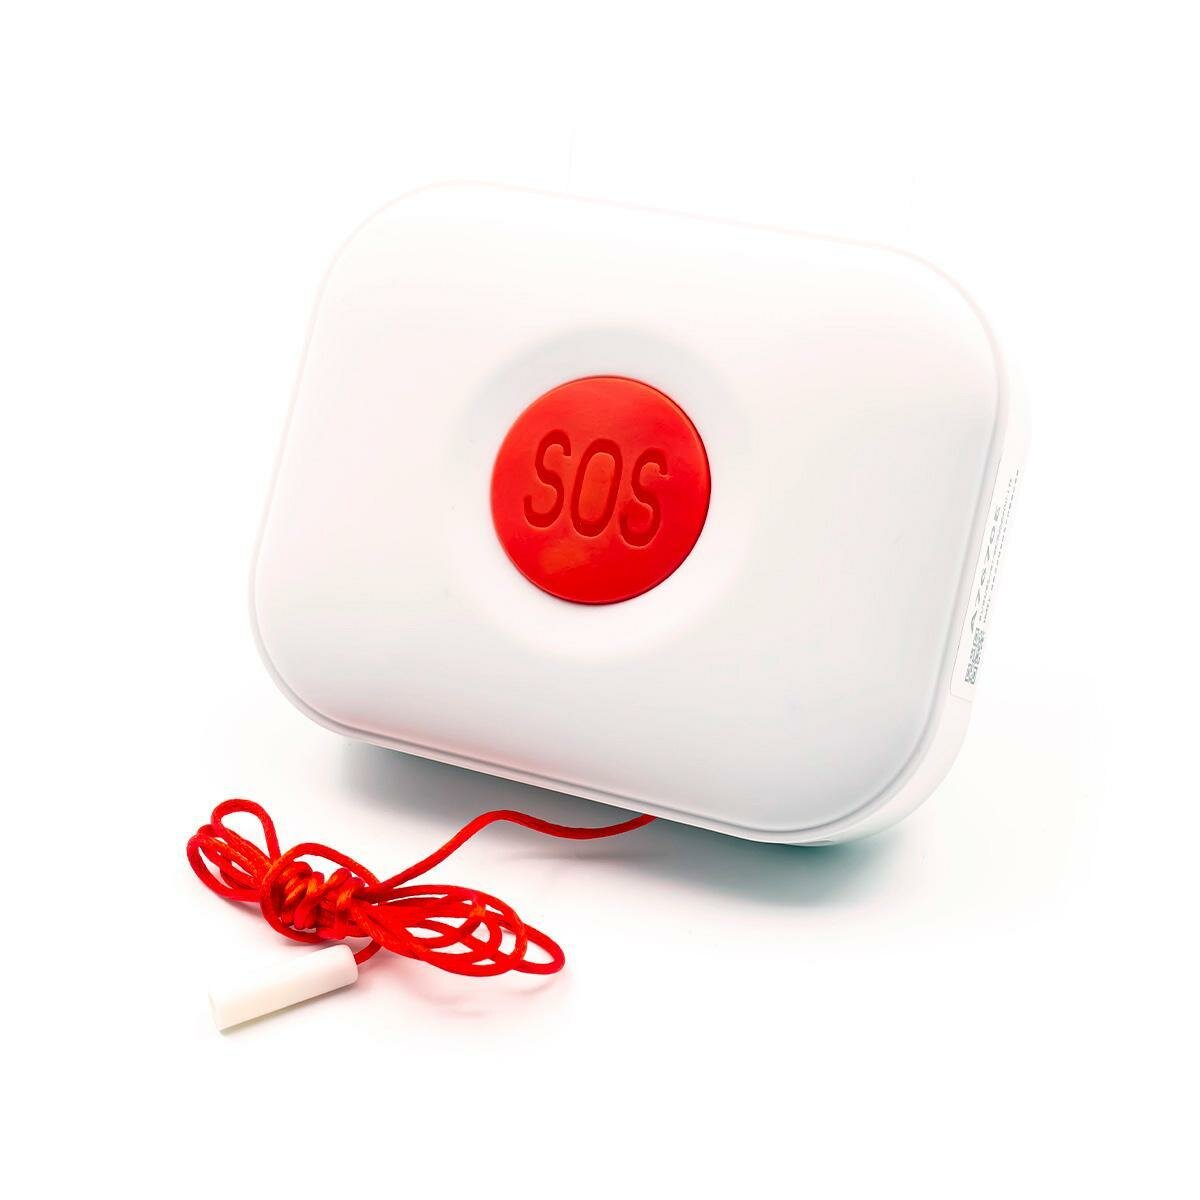 Кнопка GSM-4G SIM для лежачих больных Straz-SOS GSM-MED (N51607TR) - переносная тревожная кнопка для экстренной связи в больнице или дома.